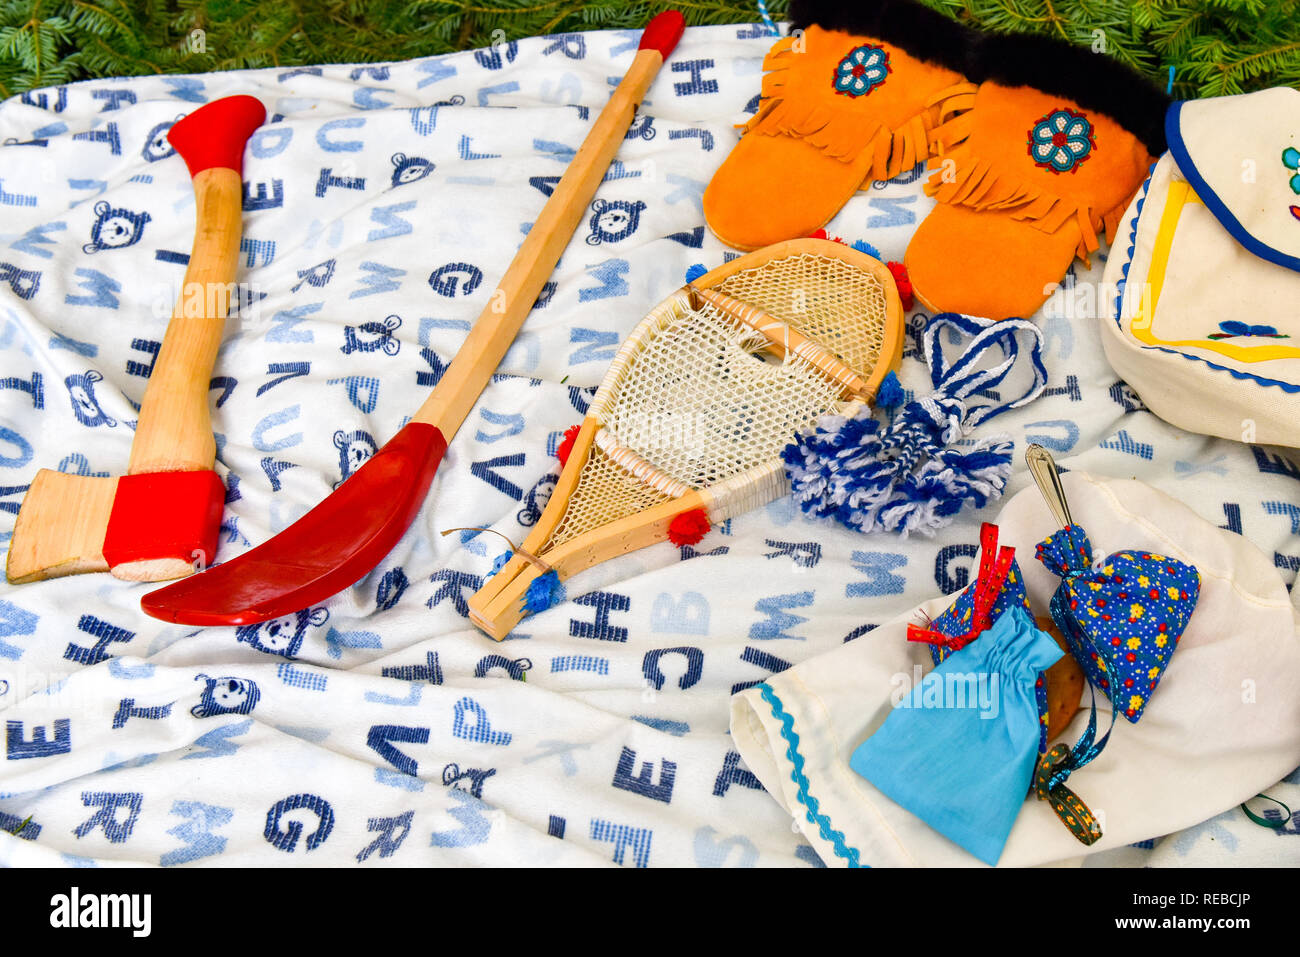 Handgefertigte Gegenstände, die für die Zeremonie der Ureinwohner verwendet wurden, Nord-Quebec, kanada Stockfoto